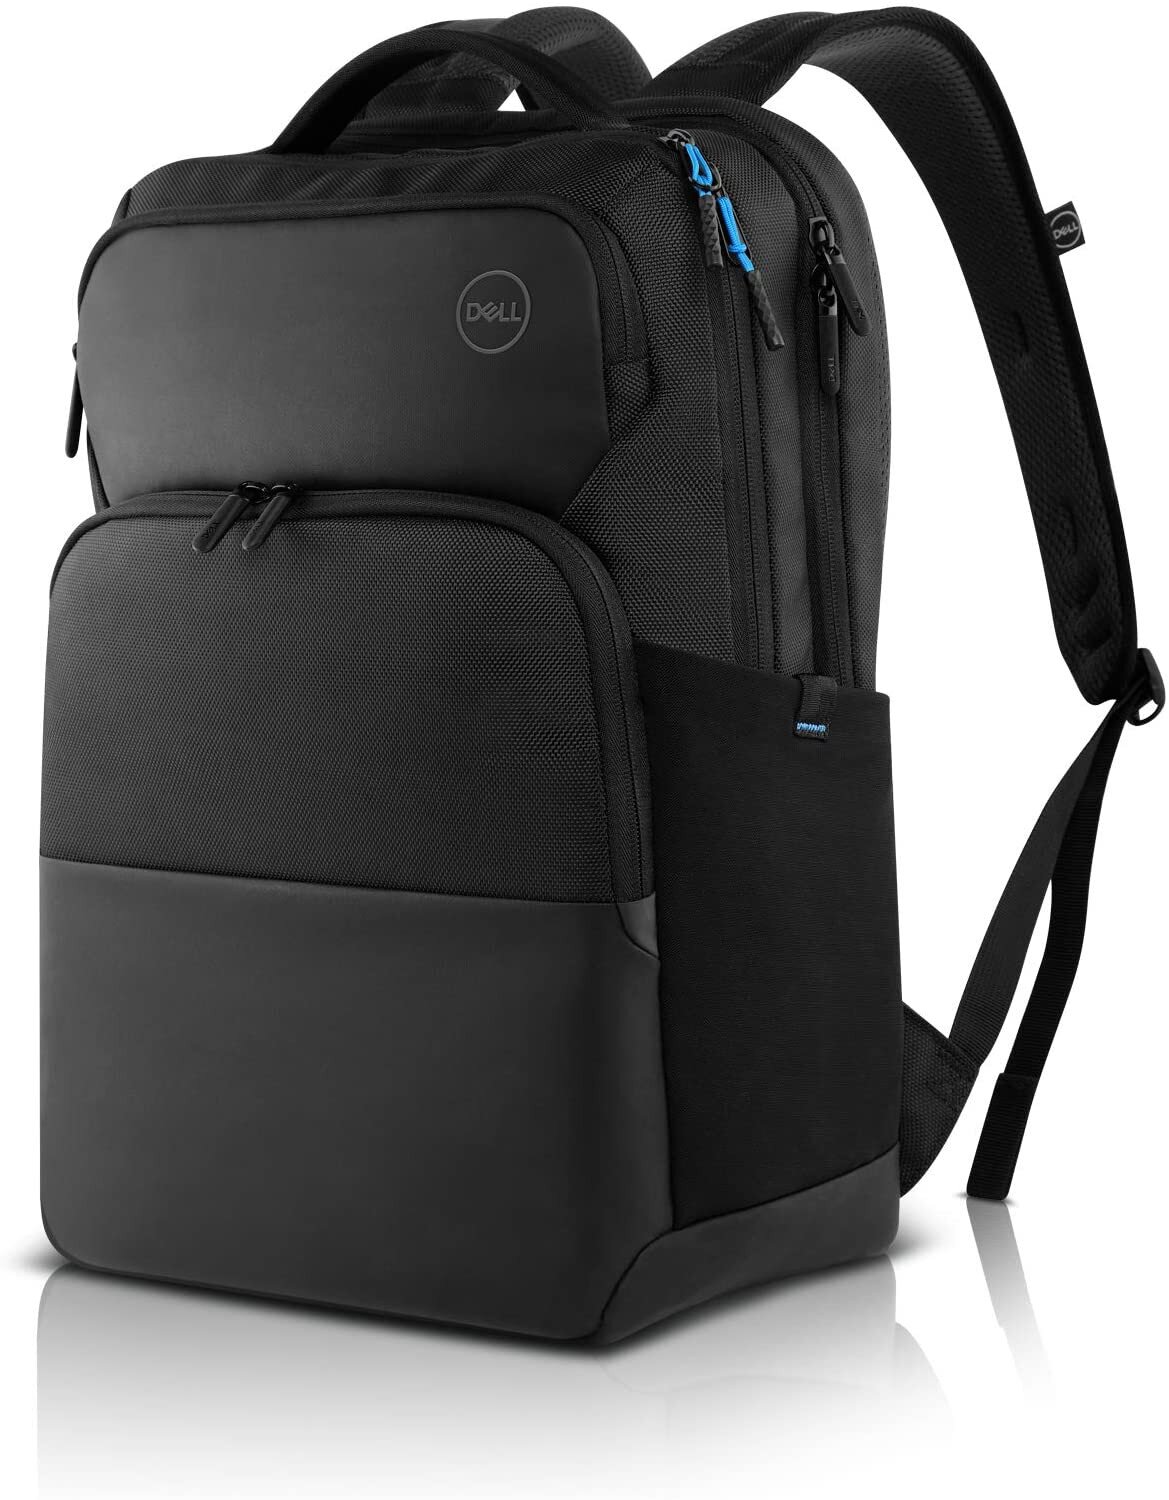 Buy Dell Pro Backpack 15 - PO1520P online in Pakistan - Tejar.pk